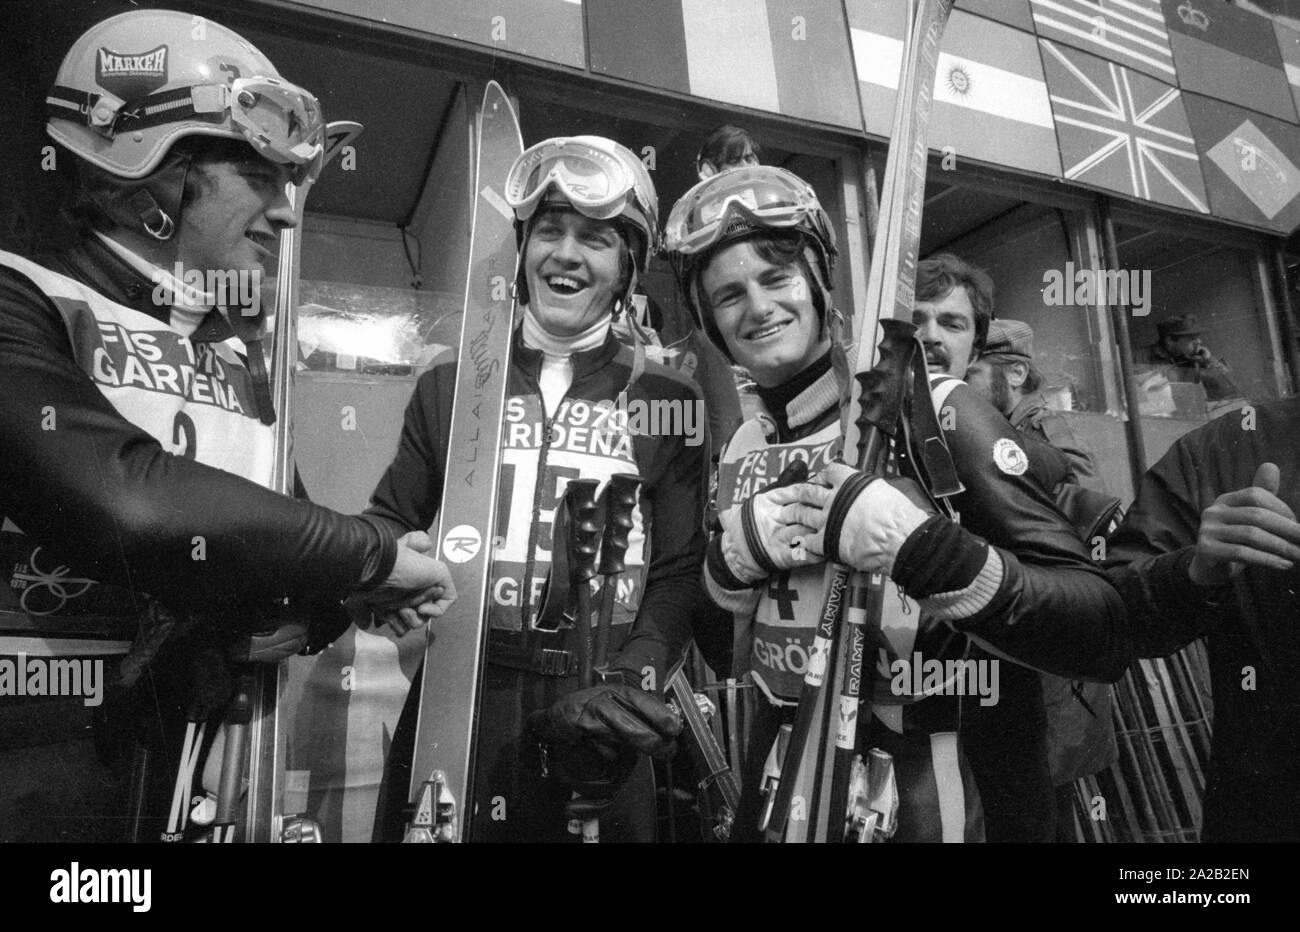 Die Alpine Ski-WM in Val Gardena zwischen 7.2.1970 und 15.2.1970, und er hatte die nur Wm so weit, deren Ergebnisse die Alpine Ski WM enthalten. Foto der Sieger Bernhard Russi aus der Schweiz (Mitte), der das Rennen gewann gegen Karl Cordin aus Österreich (links) und der australischen Malcolm Milne (rechts). Stockfoto